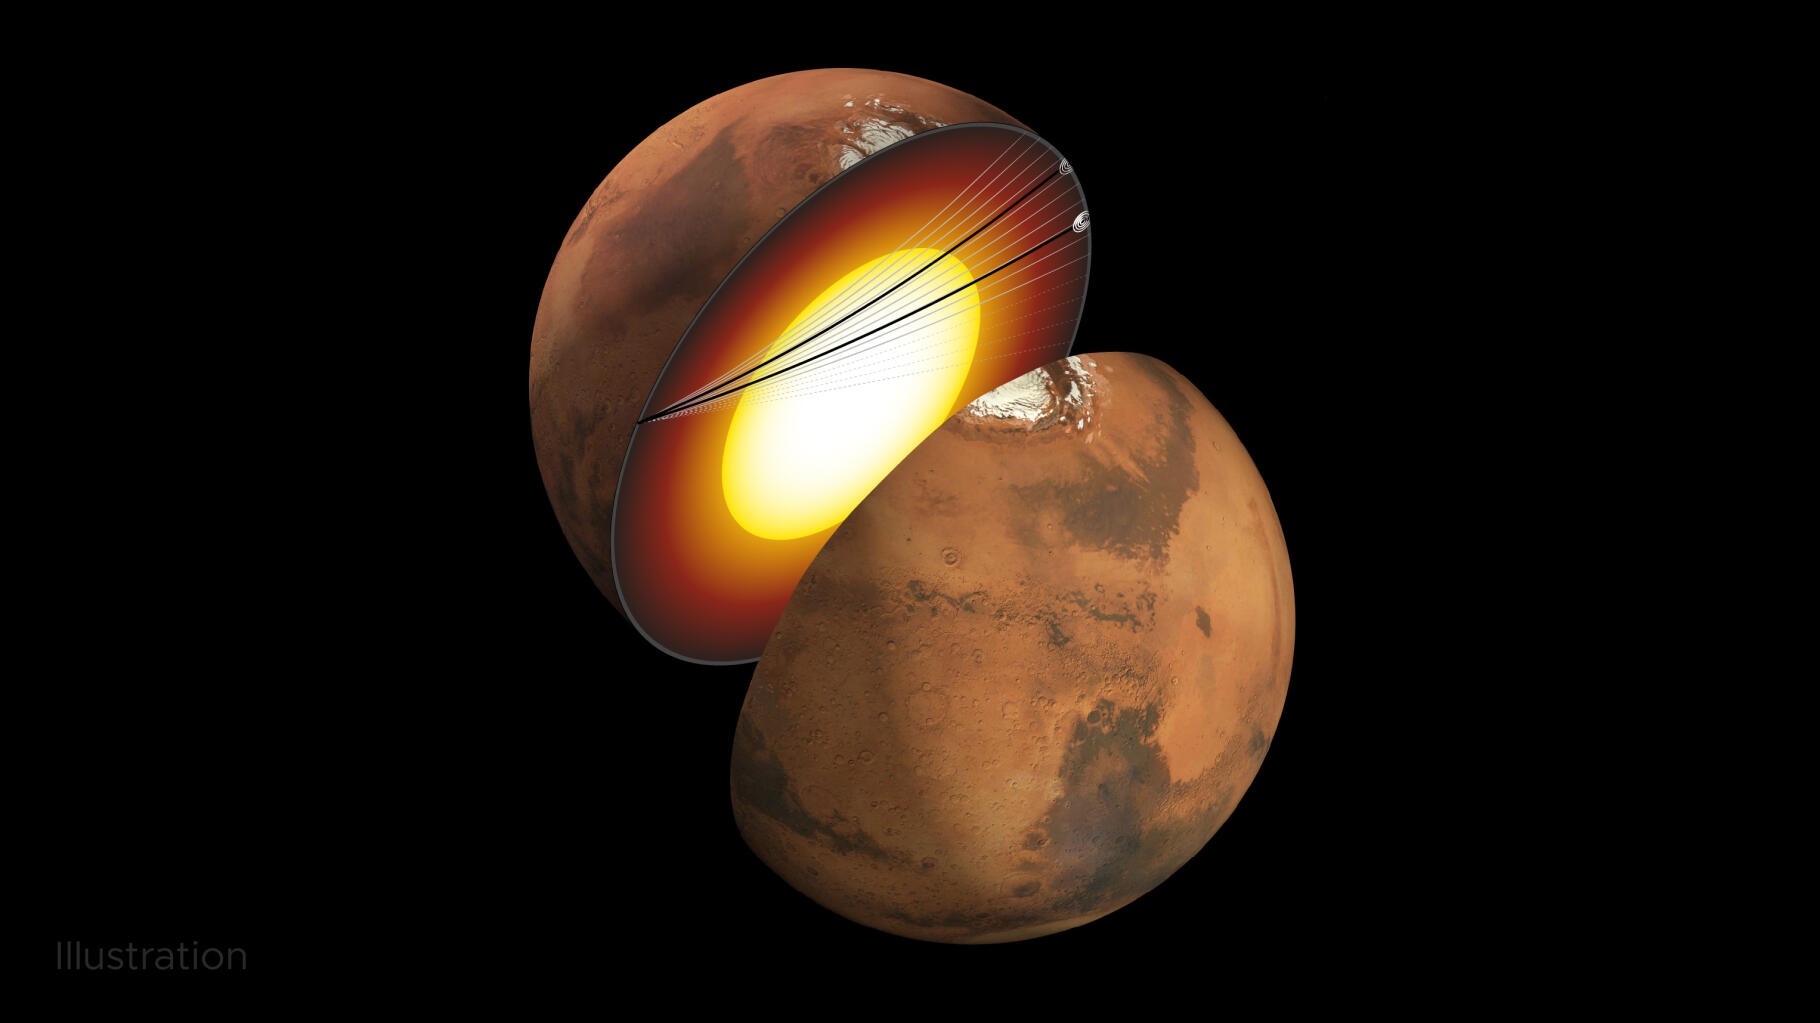 Jądro Marsa jest „płynne”, w przeciwieństwie do Ziemi